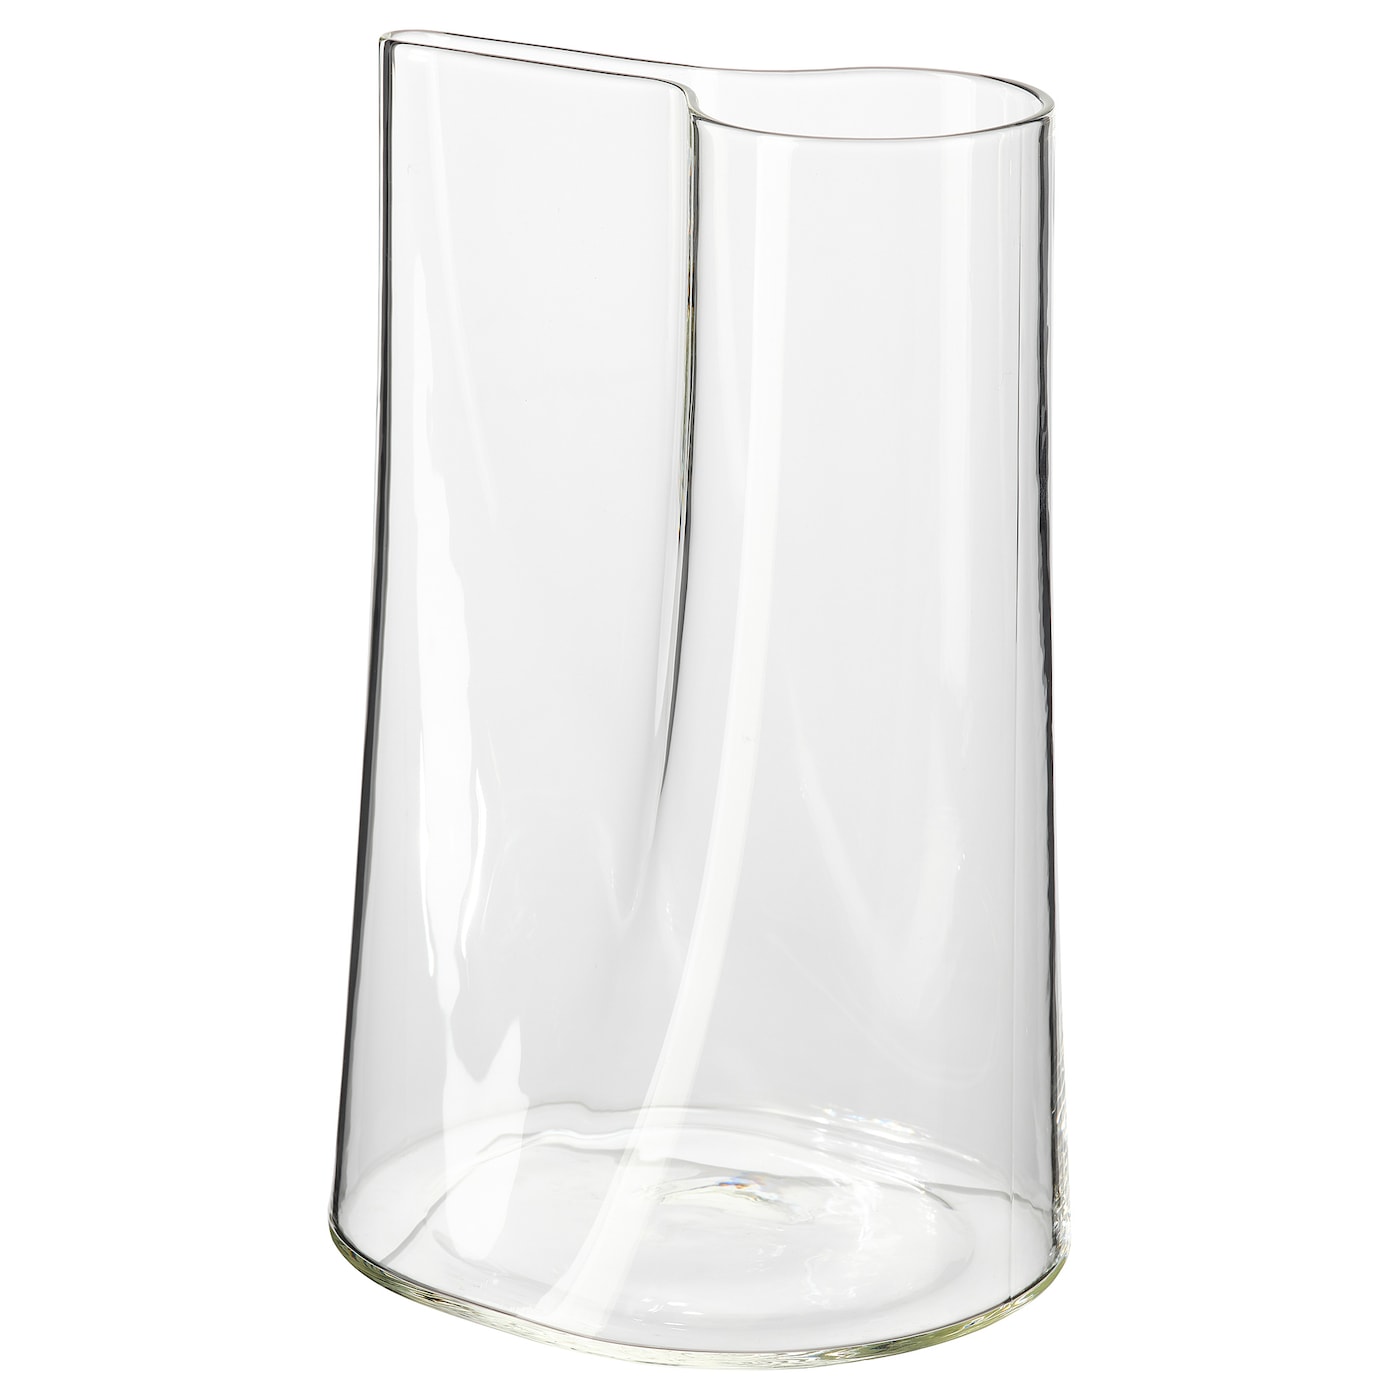 CHILIFRUKT ЧИЛИФРУКТ Ваза/лейка, прозрачное стекло, 21 см IKEA ваза для цветов лучший учитель обж